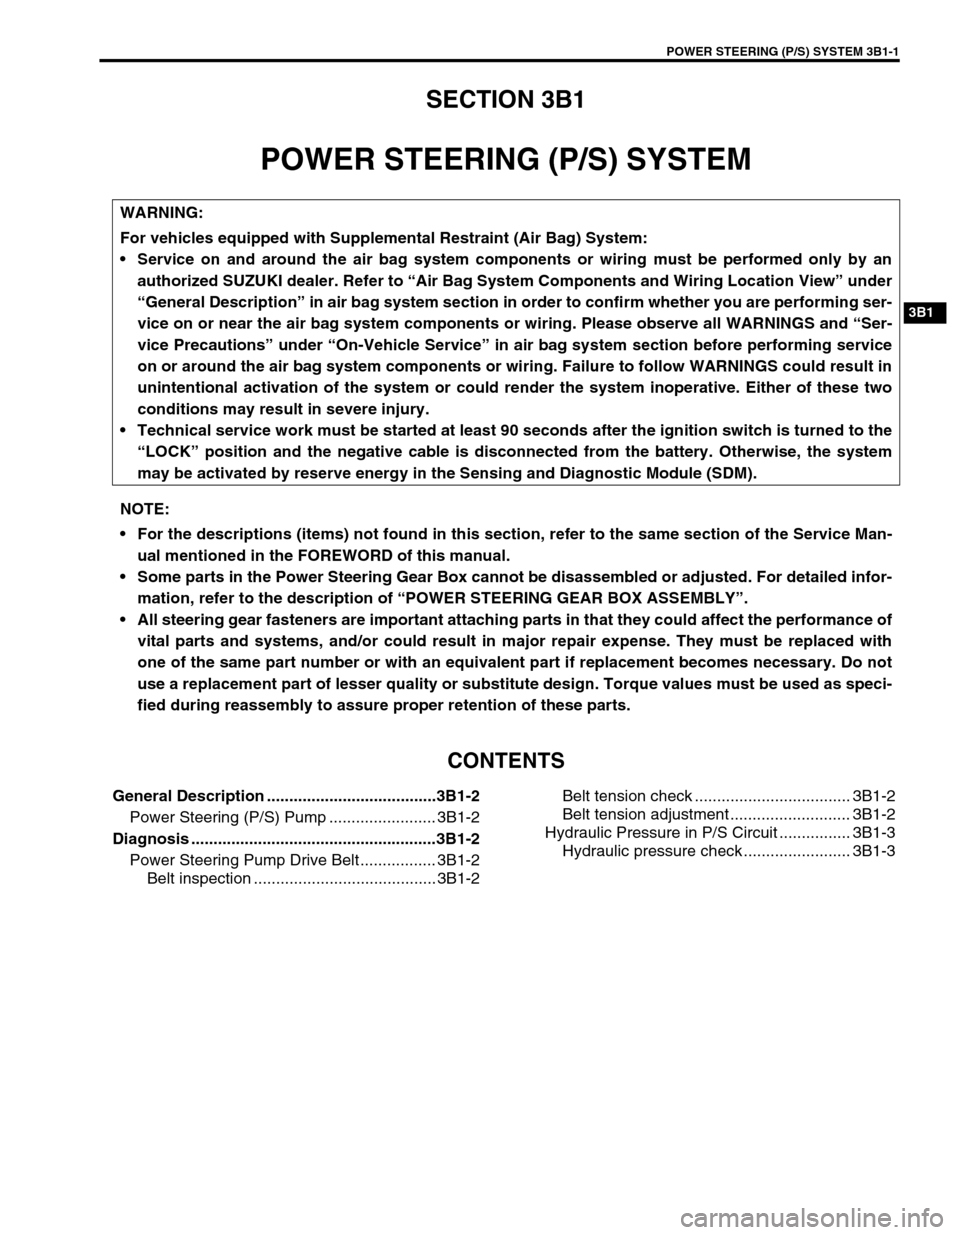 SUZUKI GRAND VITARA 2001 2.G User Guide POWER STEERING (P/S) SYSTEM 3B1-1
3B1
SECTION 3B1
POWER STEERING (P/S) SYSTEM
CONTENTS
General Description ......................................3B1-2
Power Steering (P/S) Pump .......................